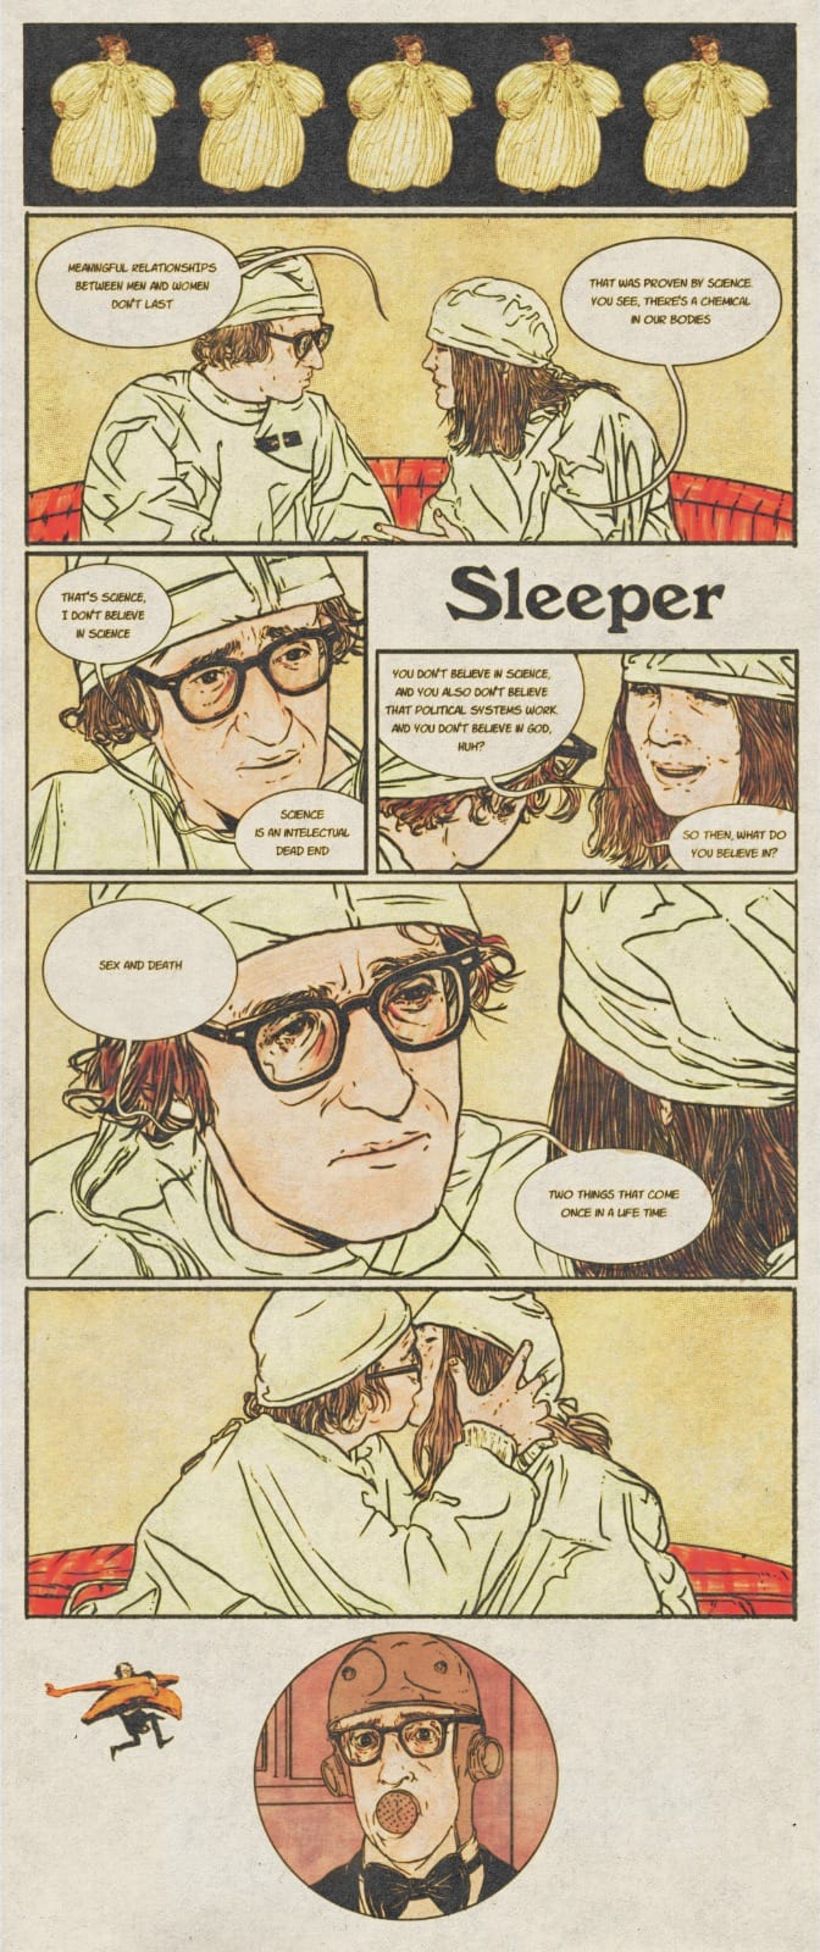 Sleeper (1973) by Woody Allen 2